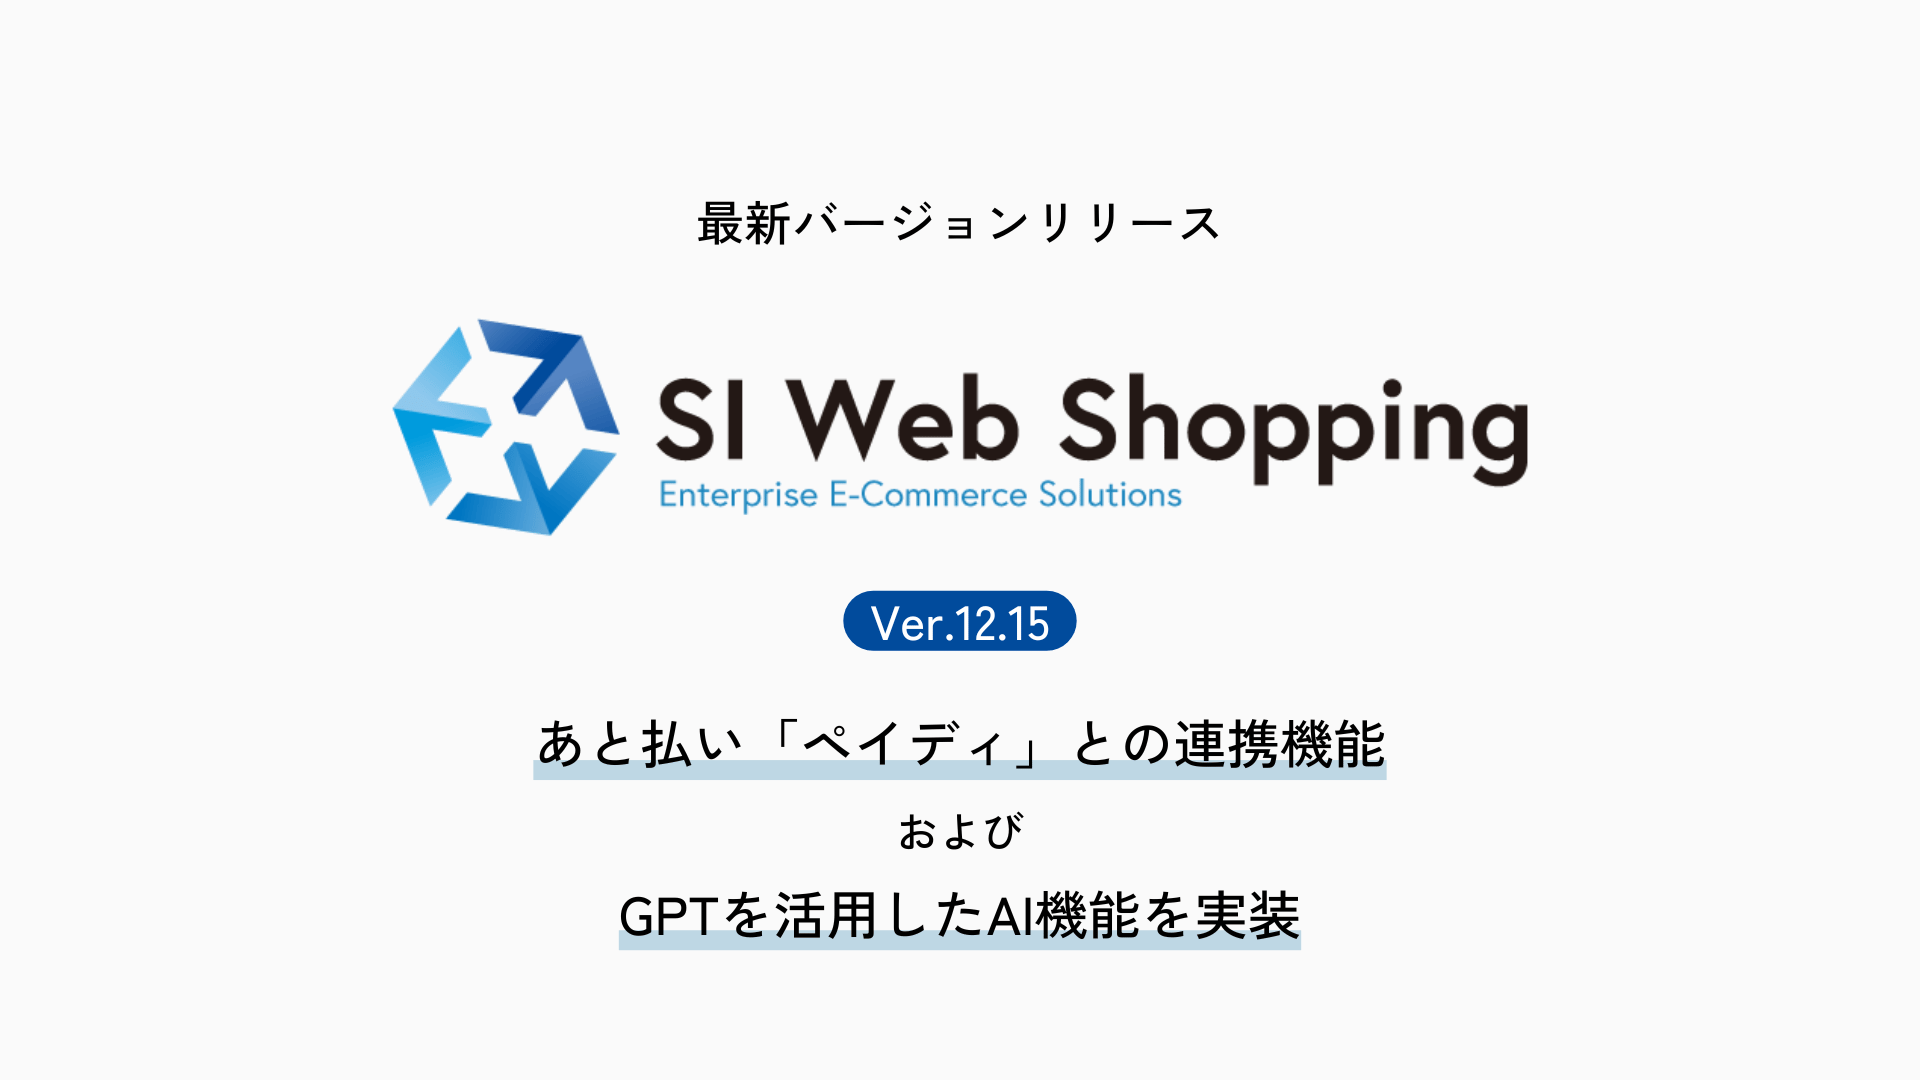 ECサイト構築パッケージSI Web Shopping、最新バージョンをリリース。あと払い「ペイディ」との連携機能およびGPTを活用したAI機能を実装